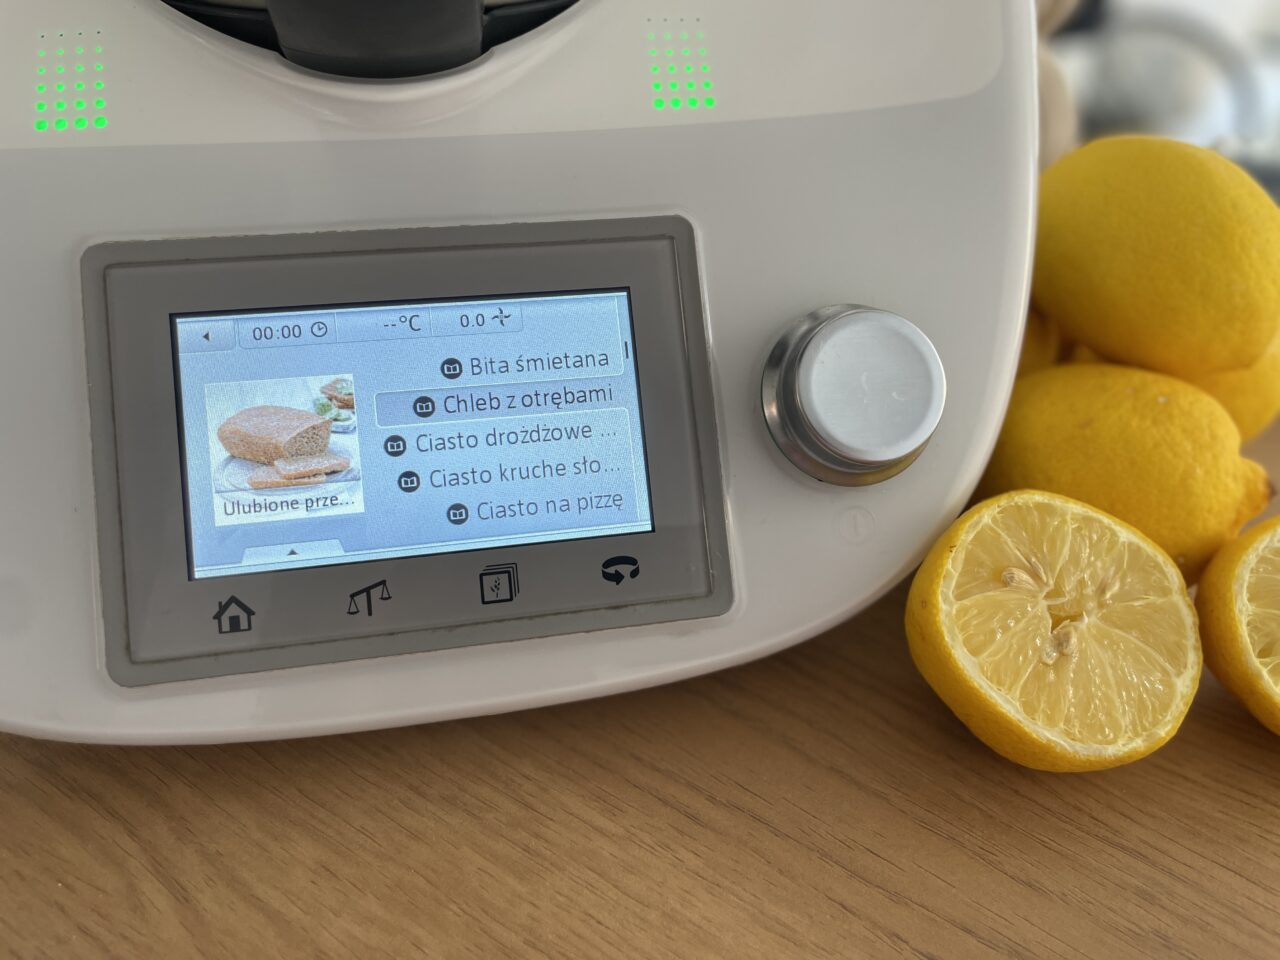 Thermomix TM5. Wyświetlacz wielofunkcyjnego robota kuchennego z wyborem opcji przygotowania jedzenia, w tym bita śmietana i chleb z otrębami, oraz obok leżące cytryny na drewnianym blacie.